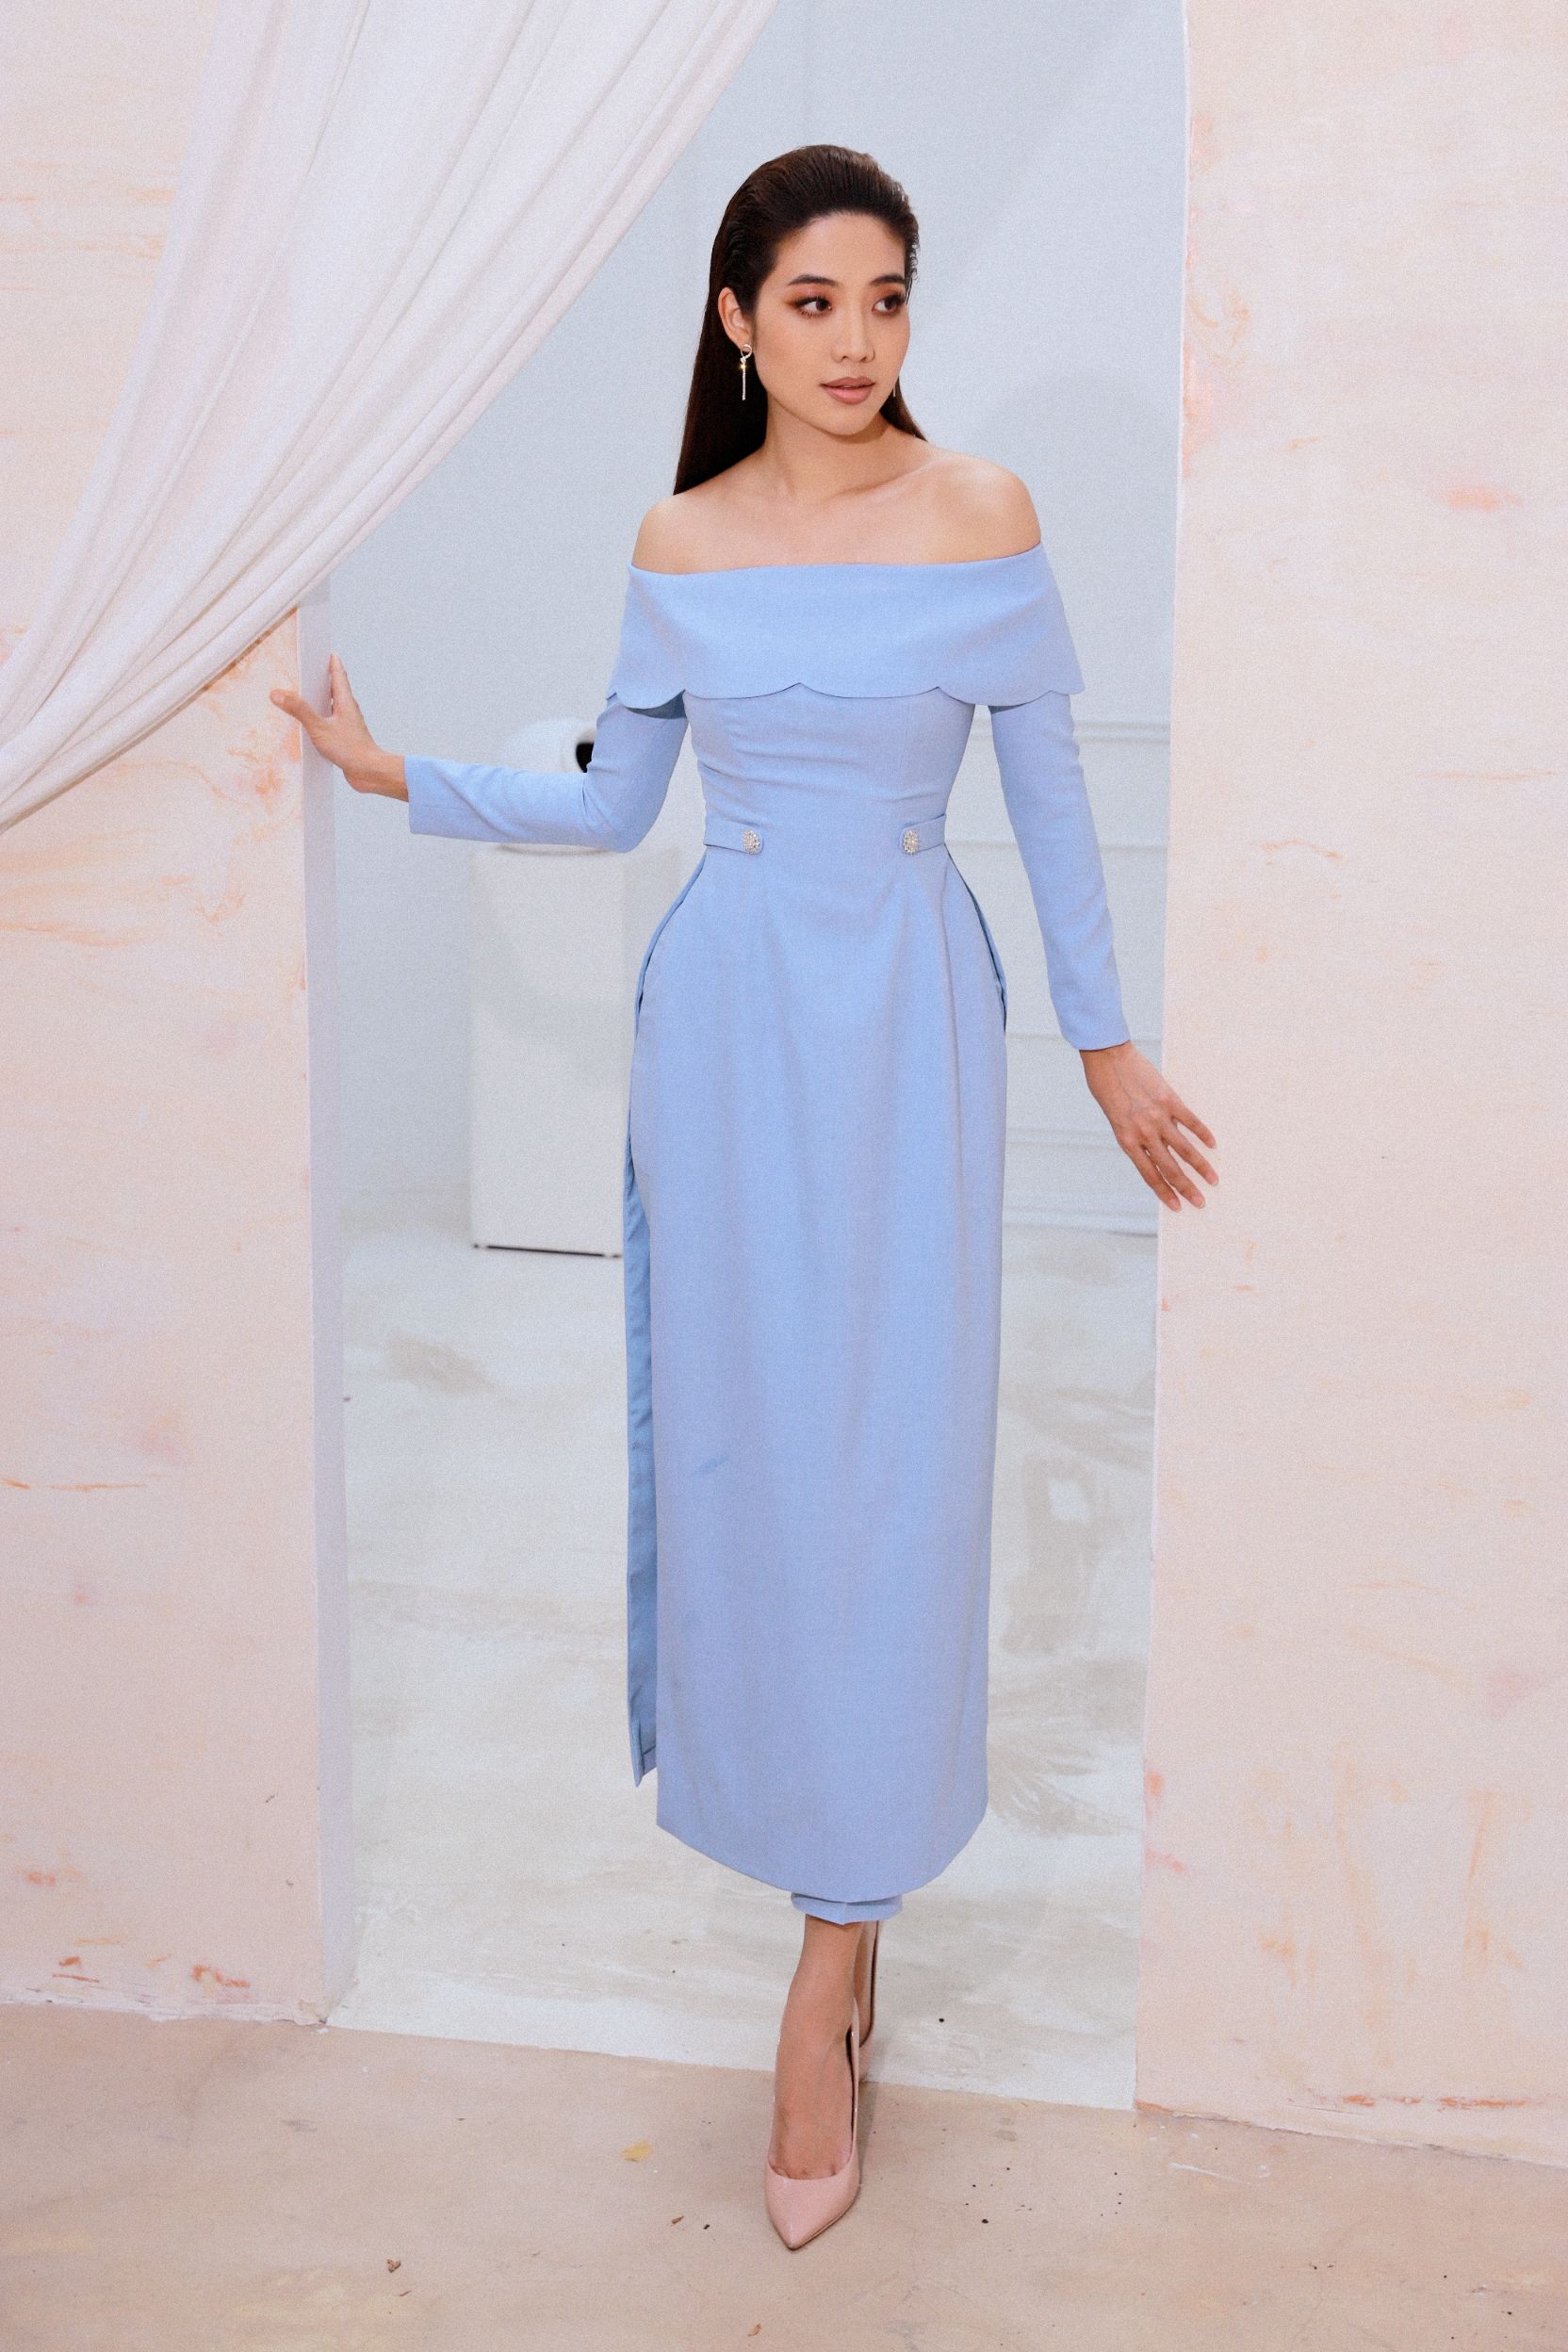 ninh hoang ngan 2 Hoa hậu Ninh Hoàng Ngân gợi ý các mẫu áo dài cách tân đẹp tinh tế cho mùa Tết 2022